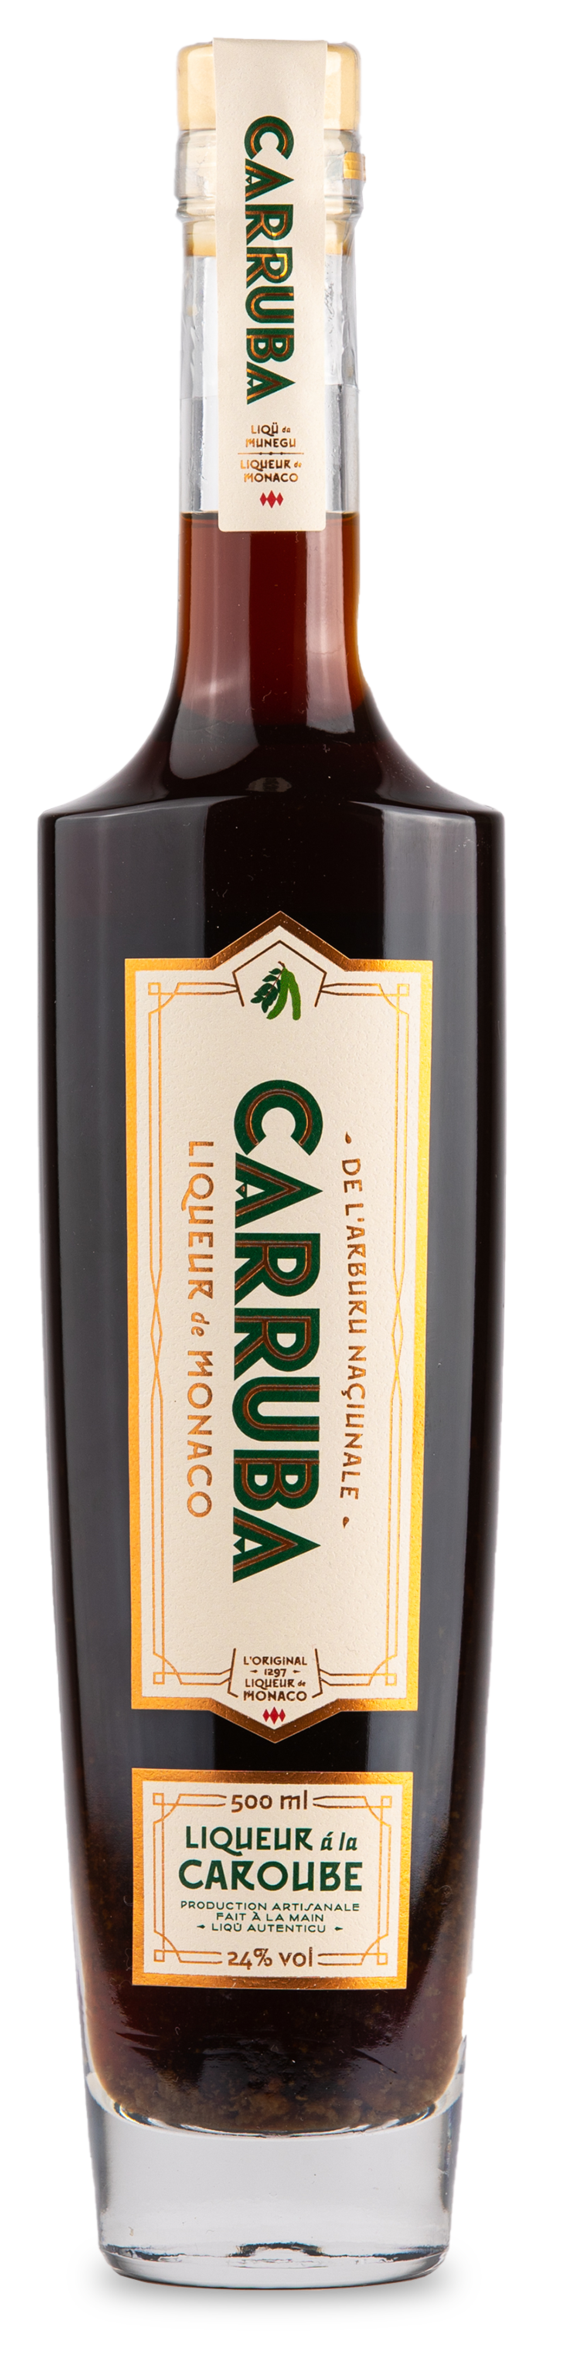 Chartreuse Jaune - Pères Chartreux - Le Caveau de Santenay